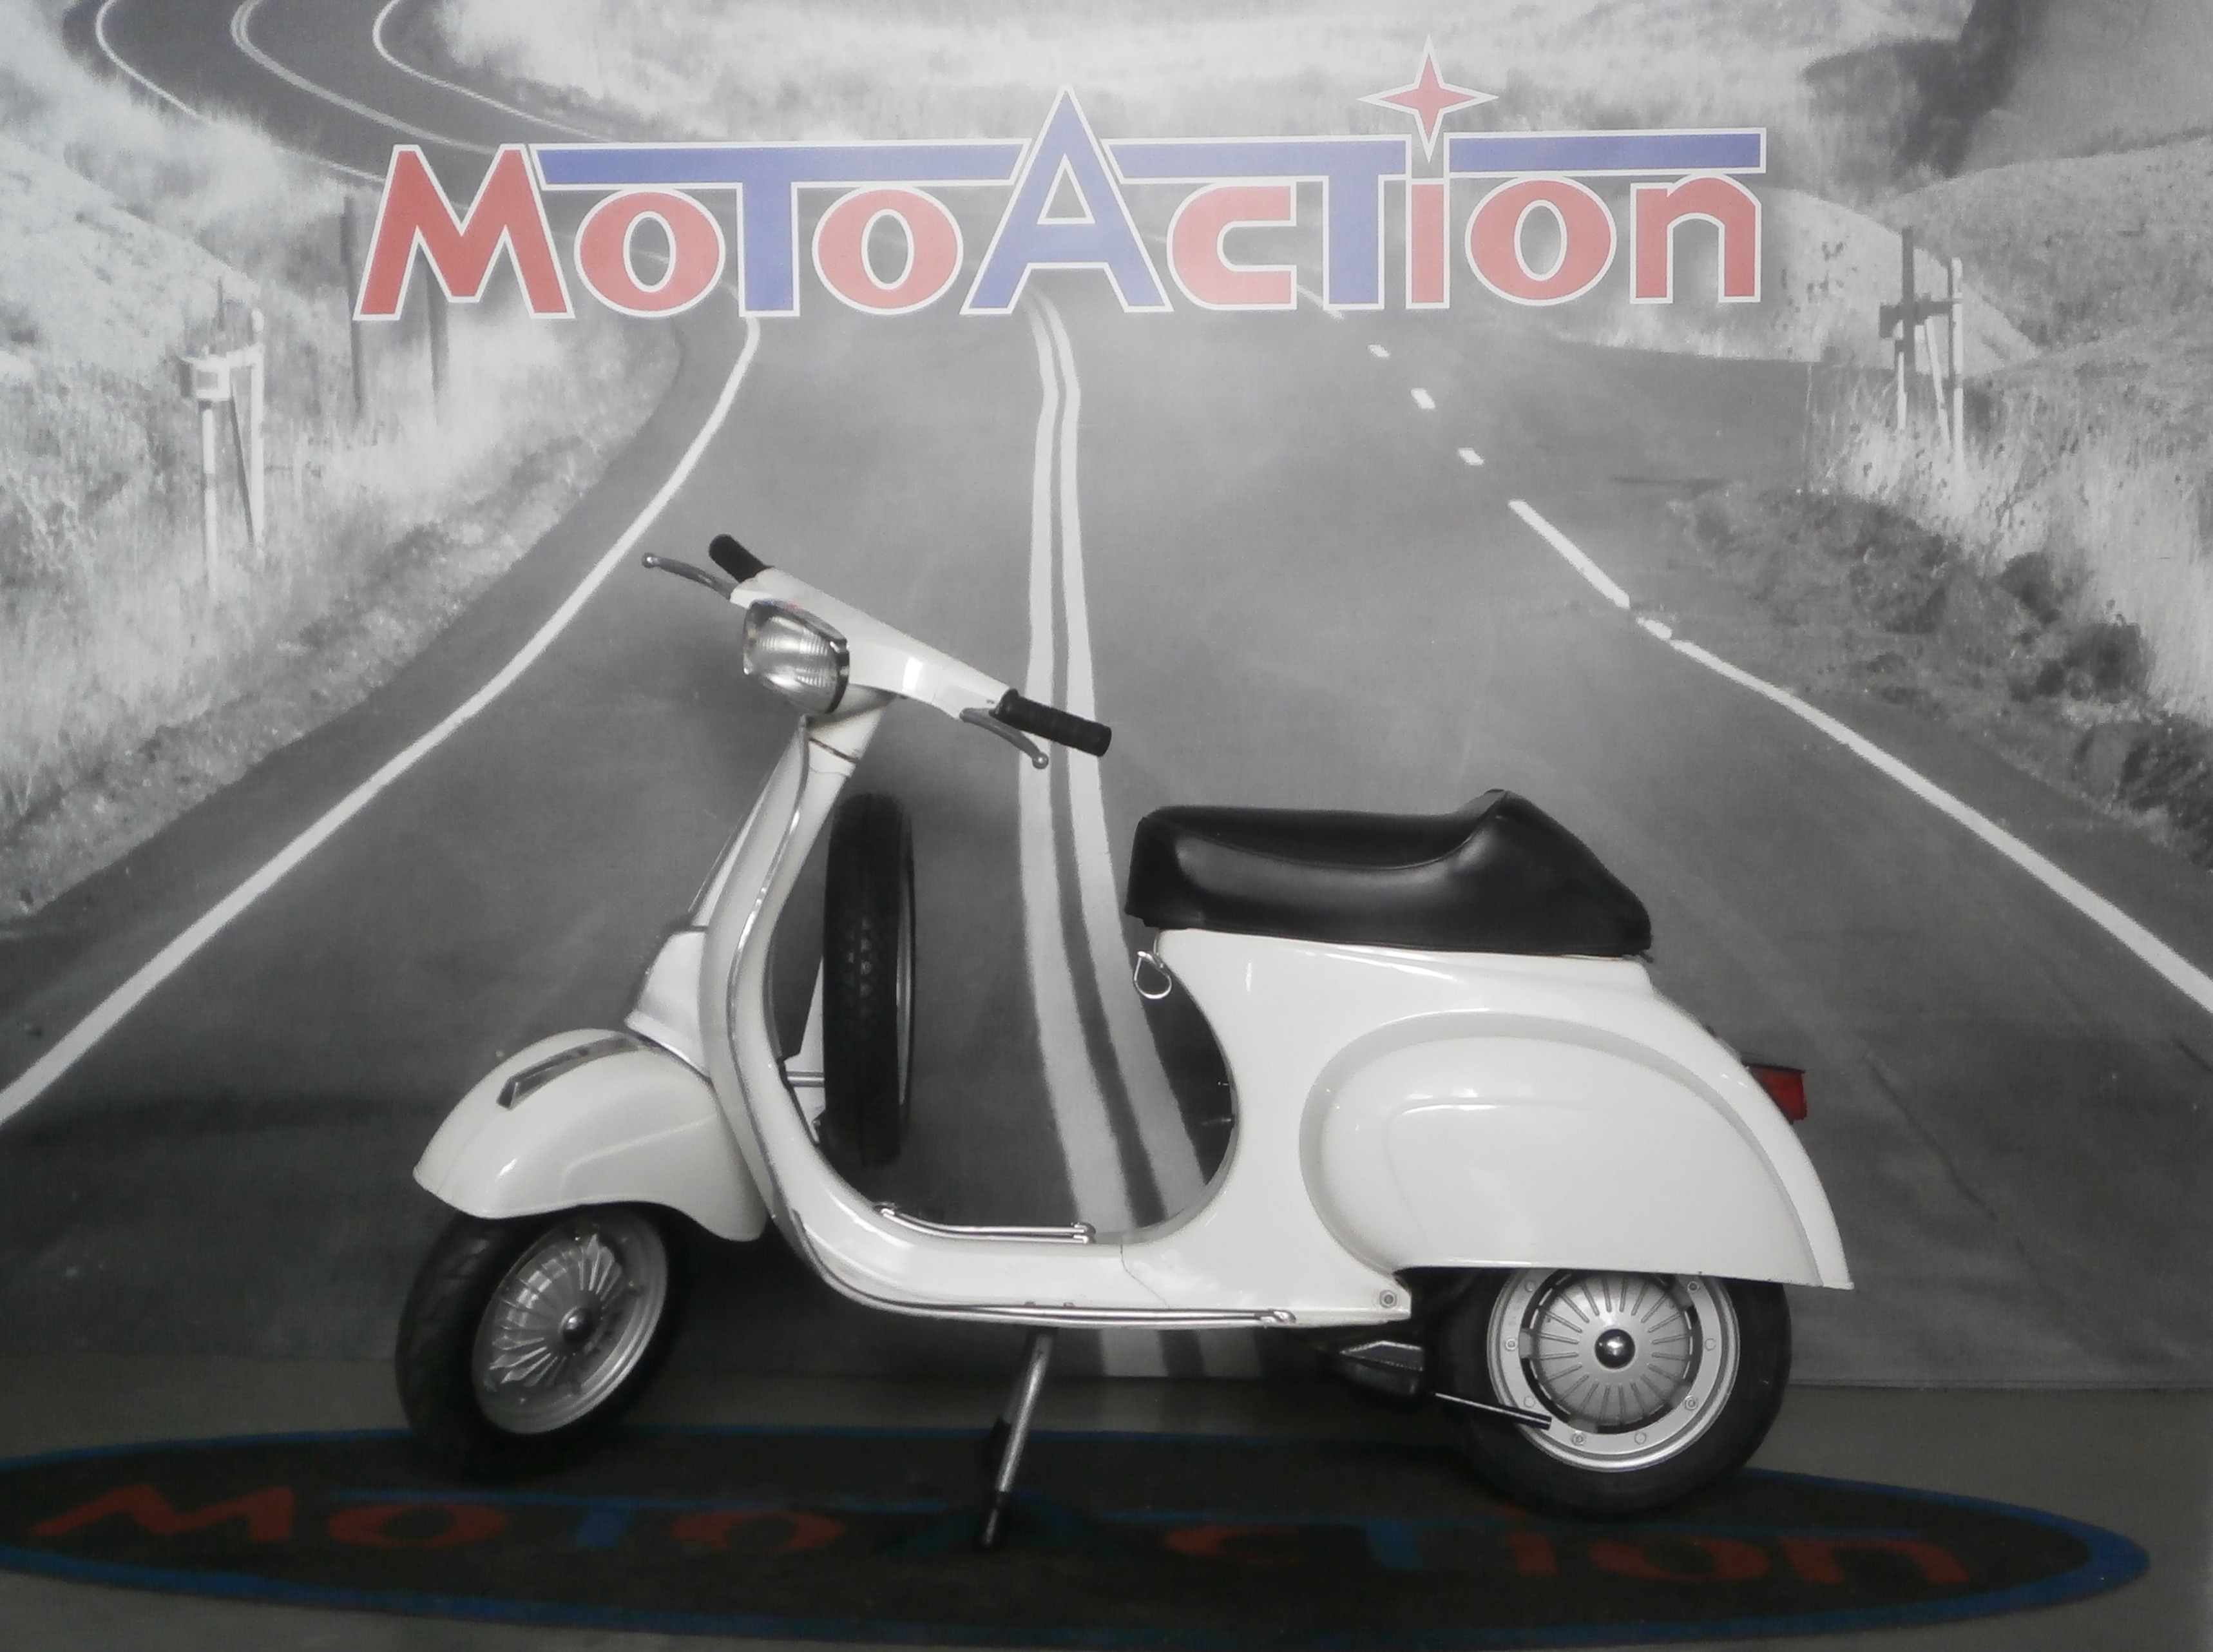 PIAGGIO VESPA 50 SPECIAL - 1982 • Moto Action, concessionaria a Scafati di  auto e moto nuove e usate